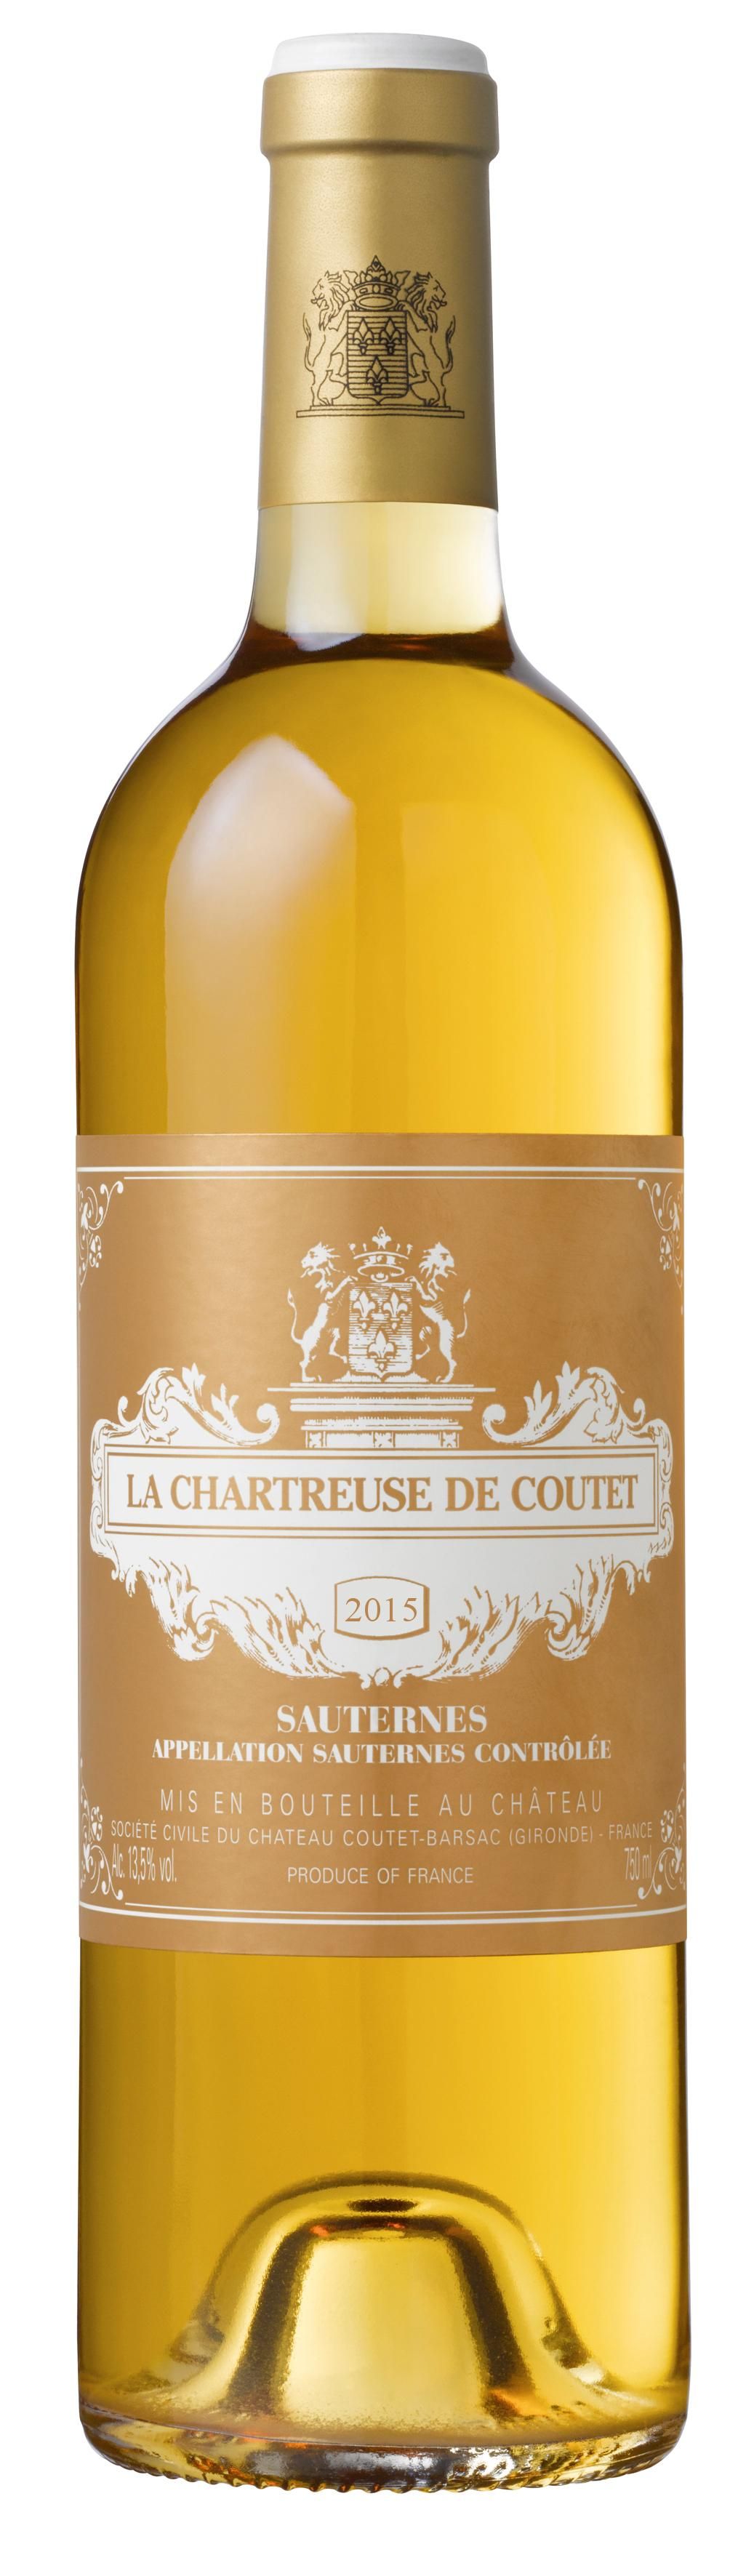 Wine La Chartreuse Coutet